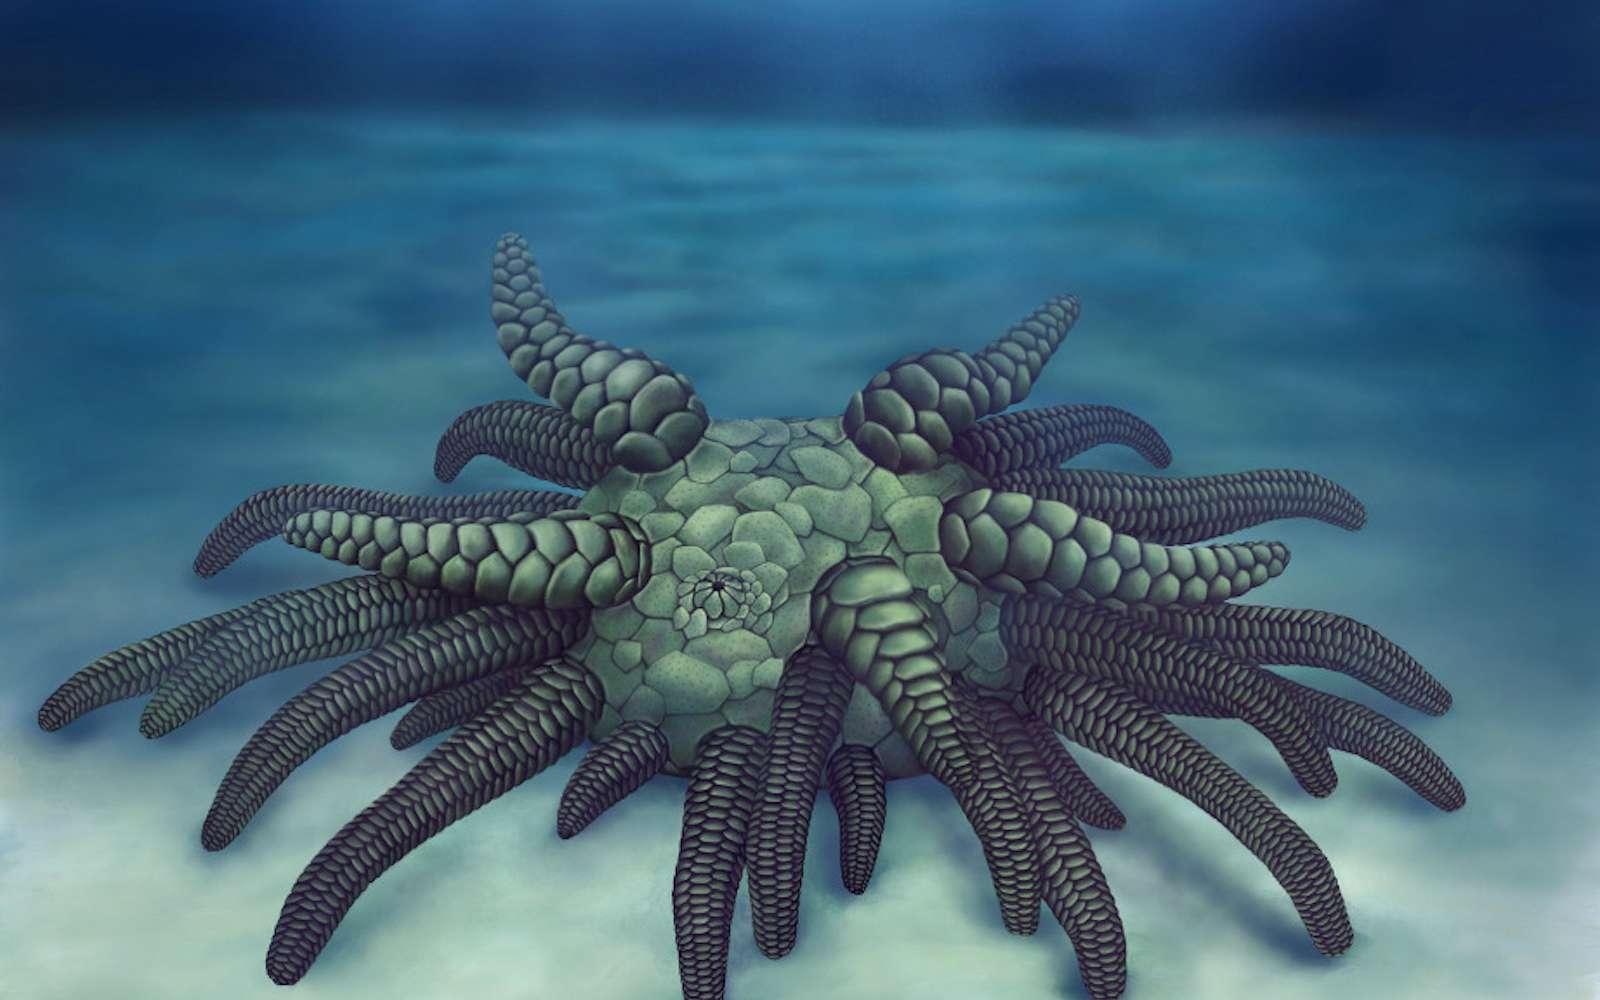 Cette étrange créature à 45 tentacules tire son nom du monstre de Lovecraft, Cthulhu. © Elissa Martin, Yale Peabody, Museum of Natural History